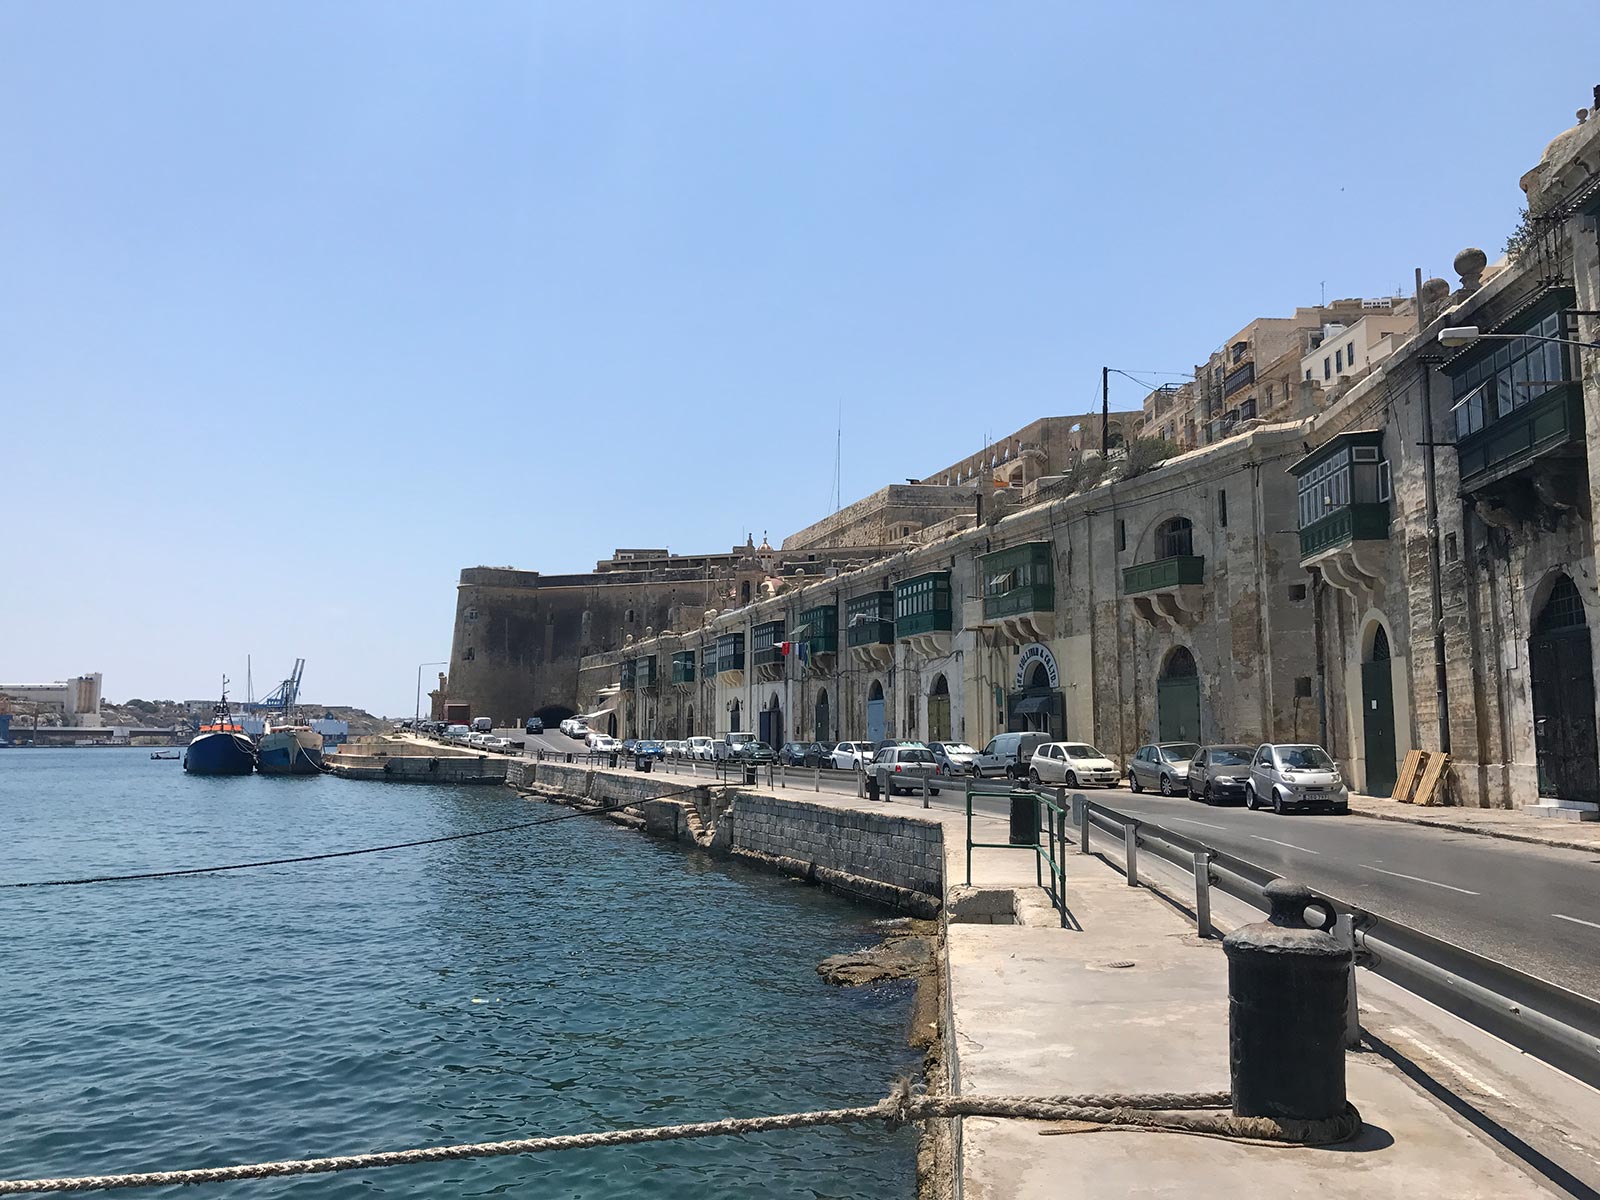 Port of Valletta in Valletta, Malta. Andorra, Barcelona & Malta